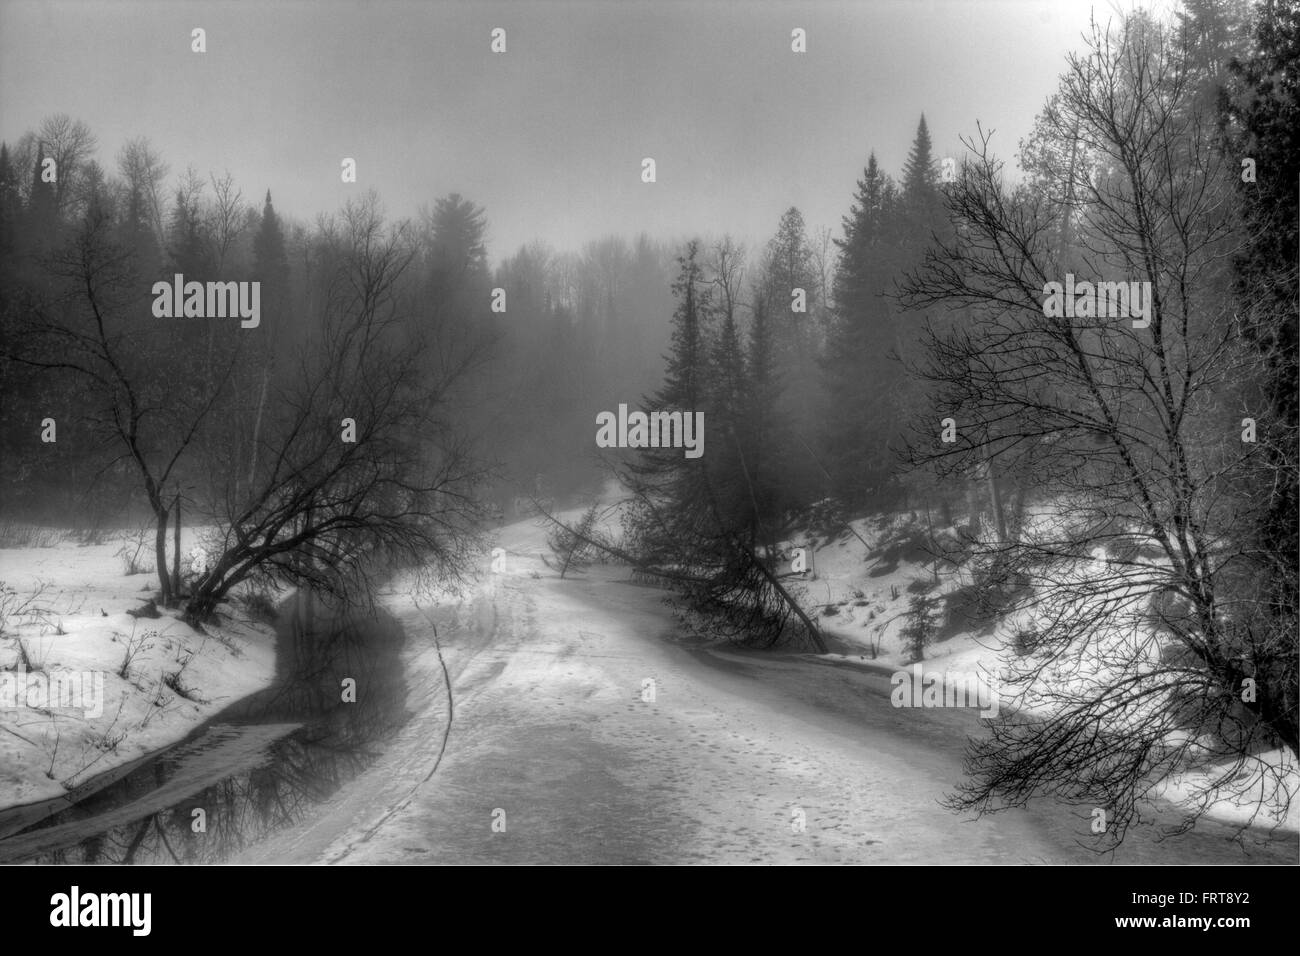 River of slush, spring melt. Black and white image. Stock Photo